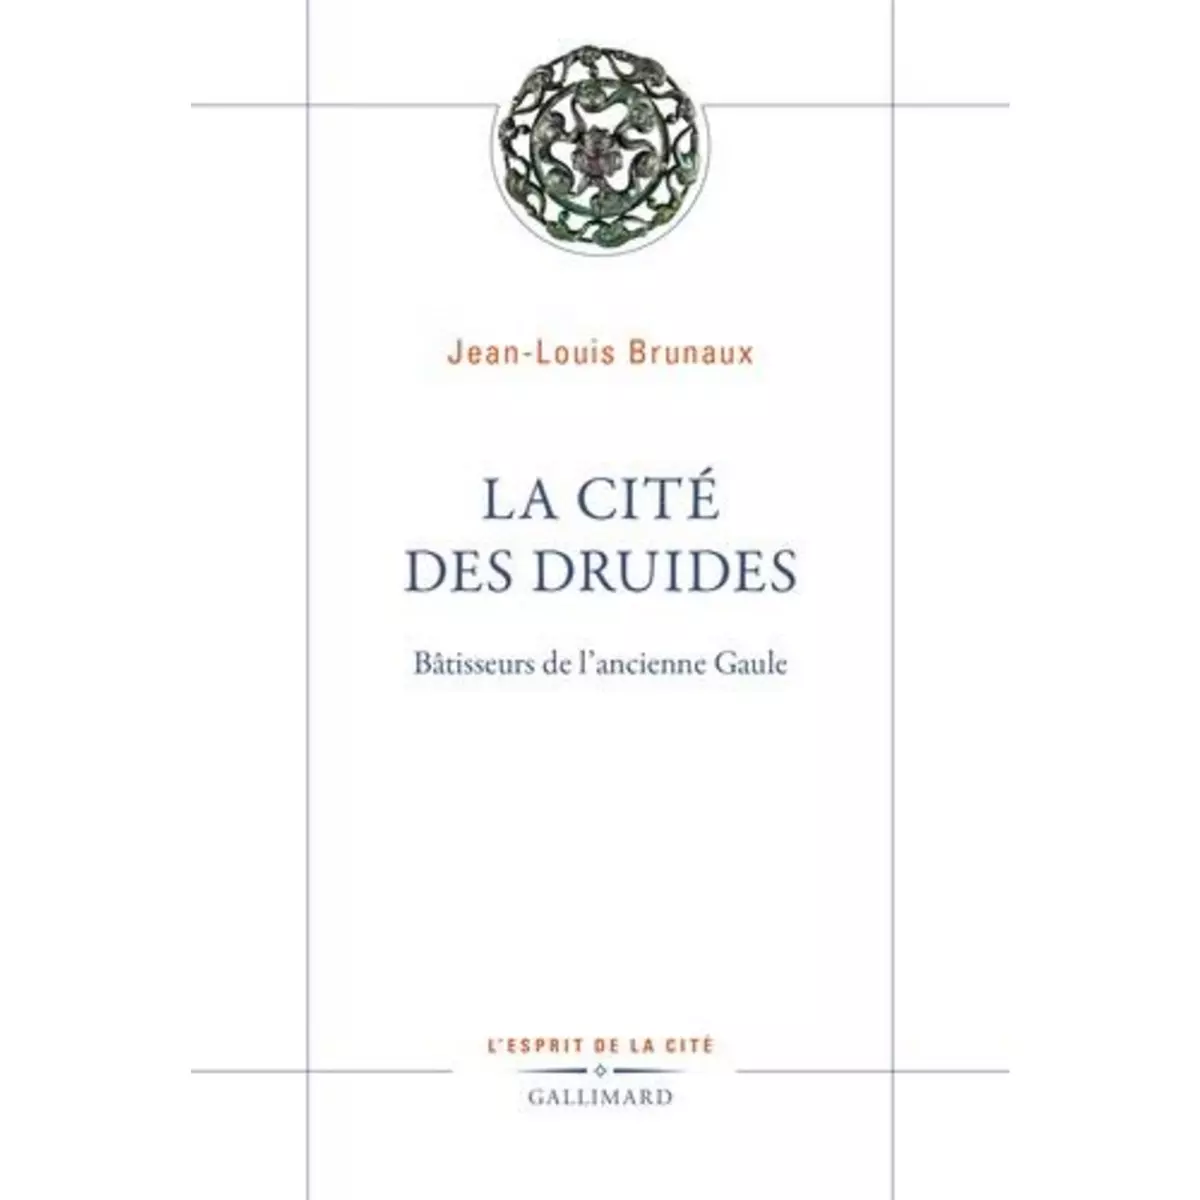  LA CITE DES DRUIDES. BATISSEURS DE L'ANCIENNE GAULE, Brunaux Jean-Louis